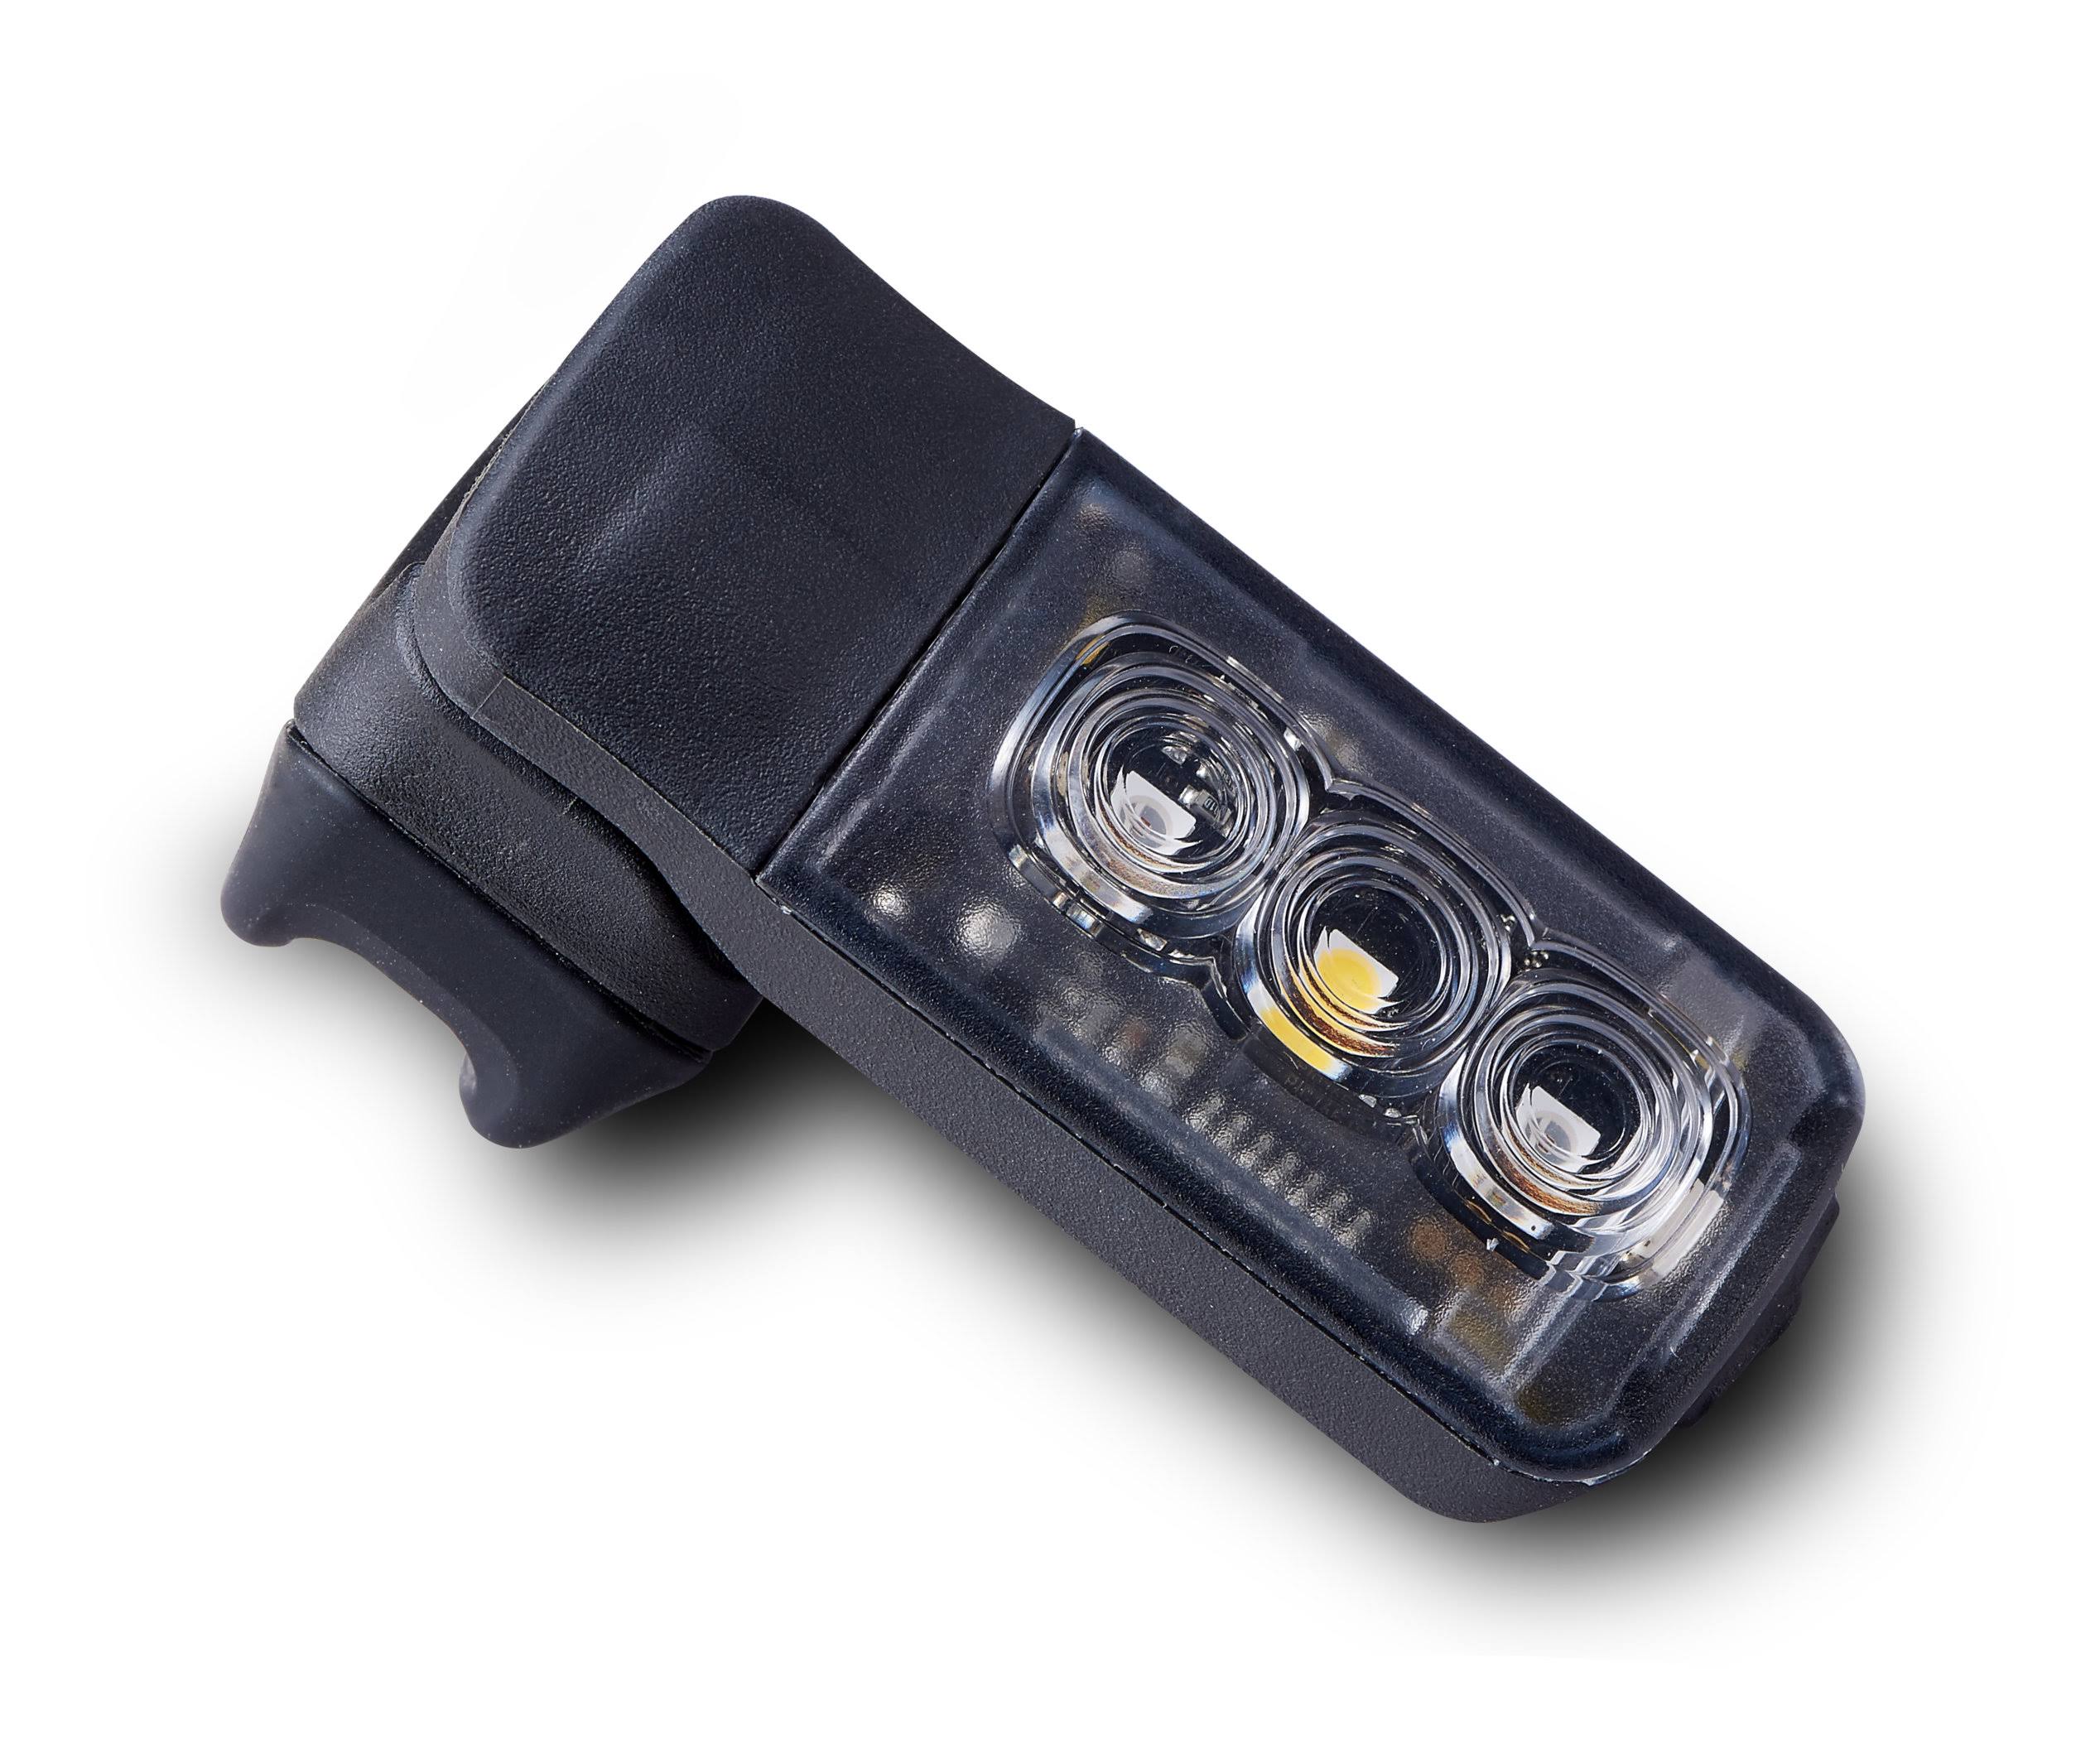 Specialized Stix Switch Headlight Taillight